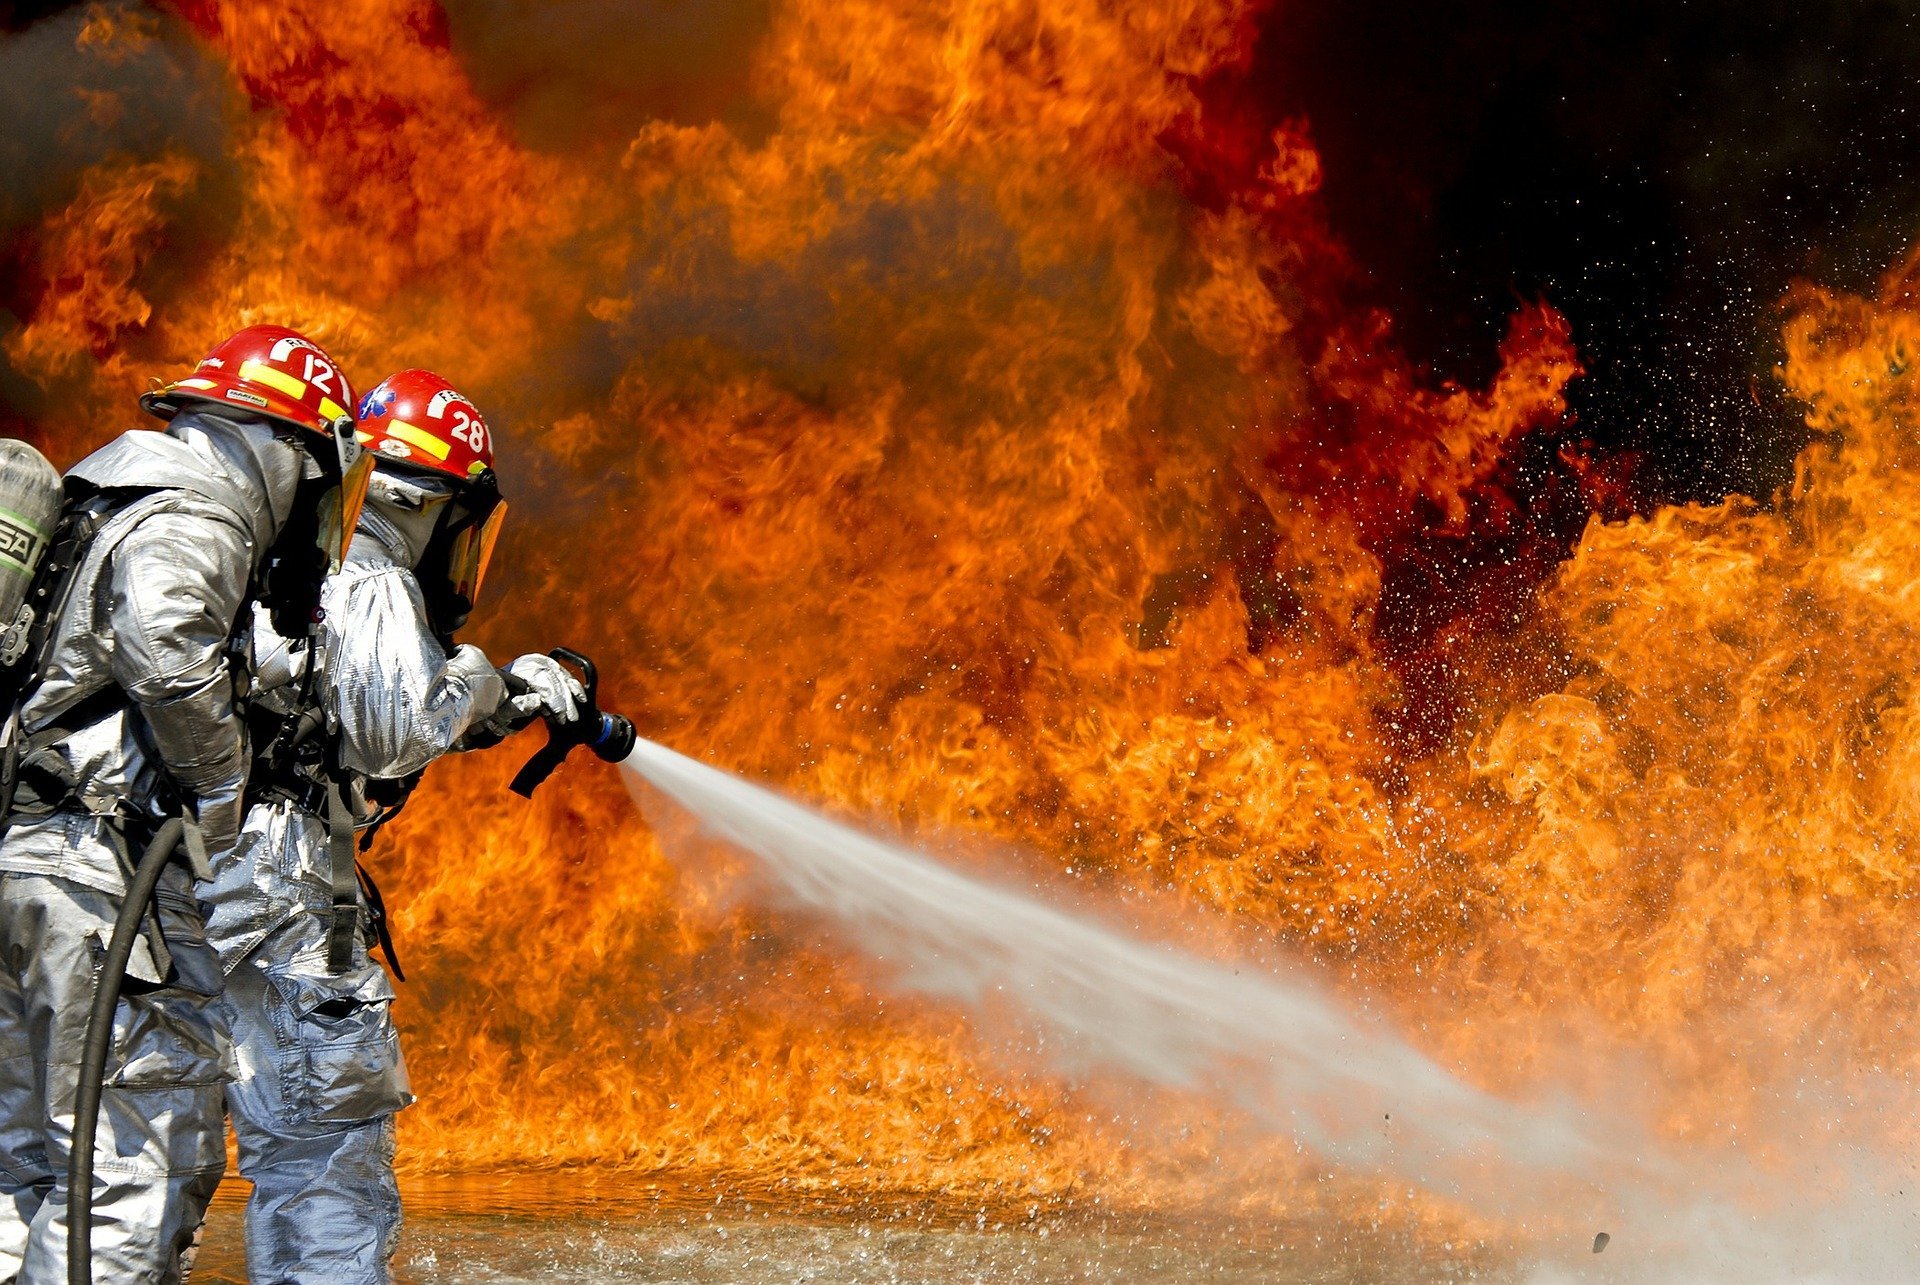 firefighters 115800 1920.jpg?resize=412,275 - Australie : Les photos montrant l'étendue des incendies diffusées dans les médias ne sont pas ce que l'on croit